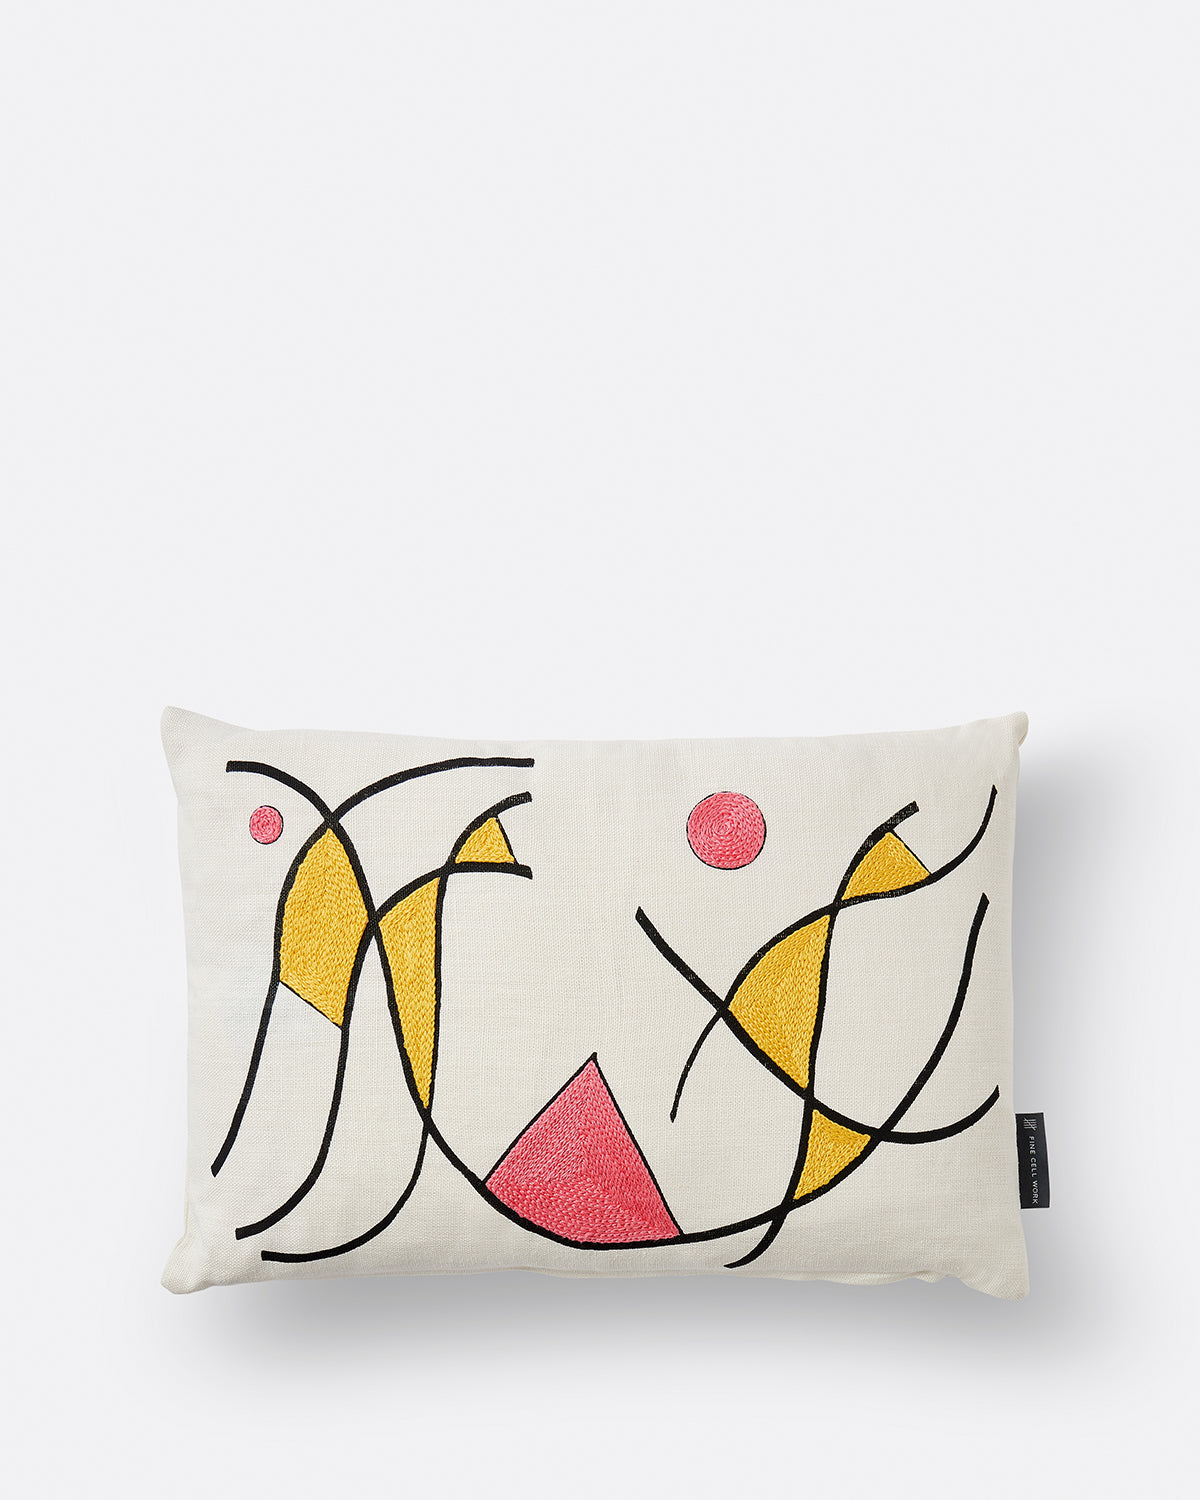 Geta Bratescu Cushion Yellow & Pink Collage